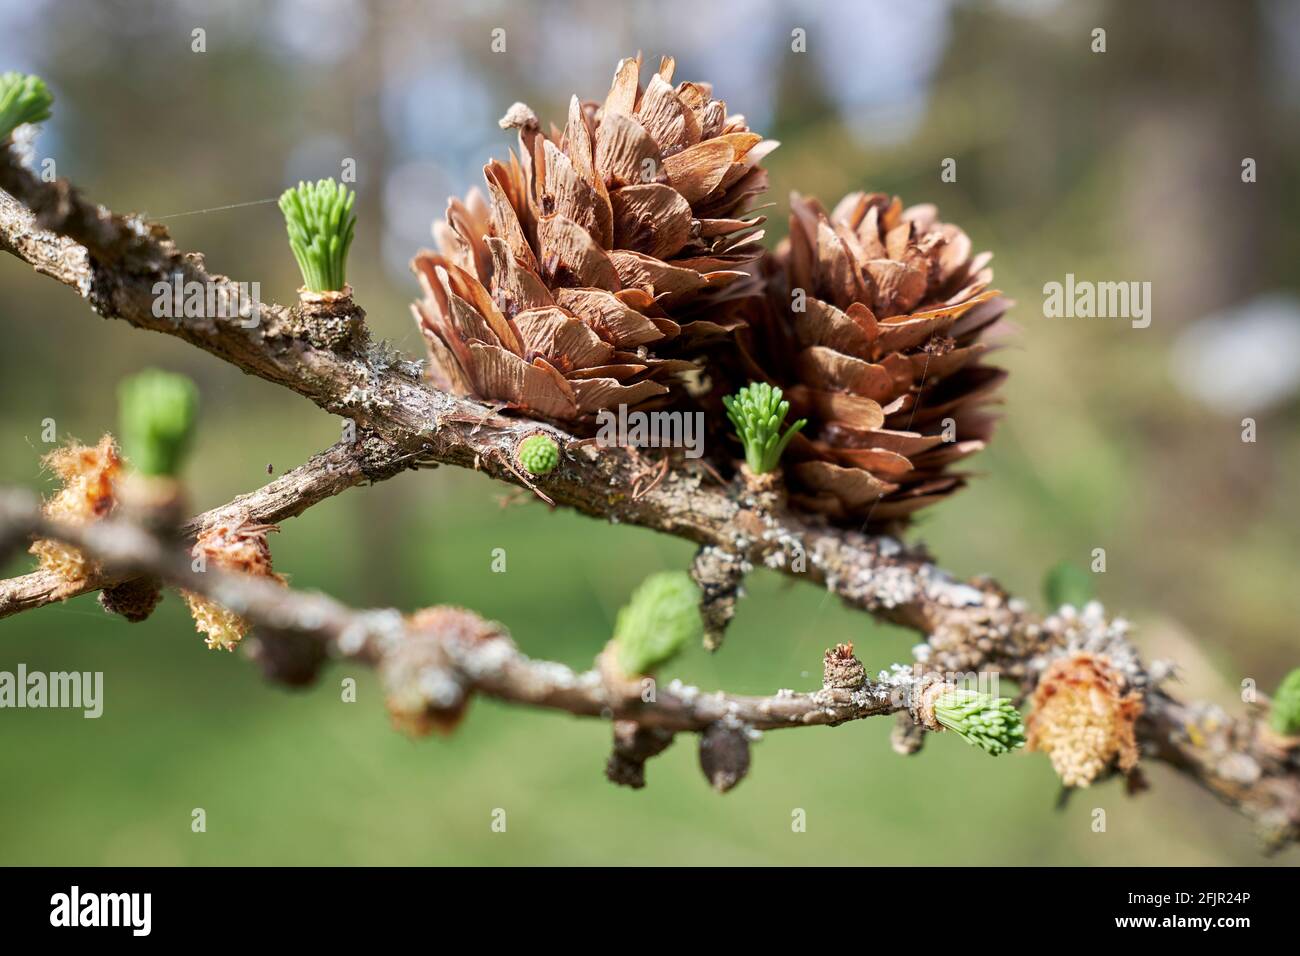 Larix × lubarskii Sukaczev larch cones in closeup Stock Photo